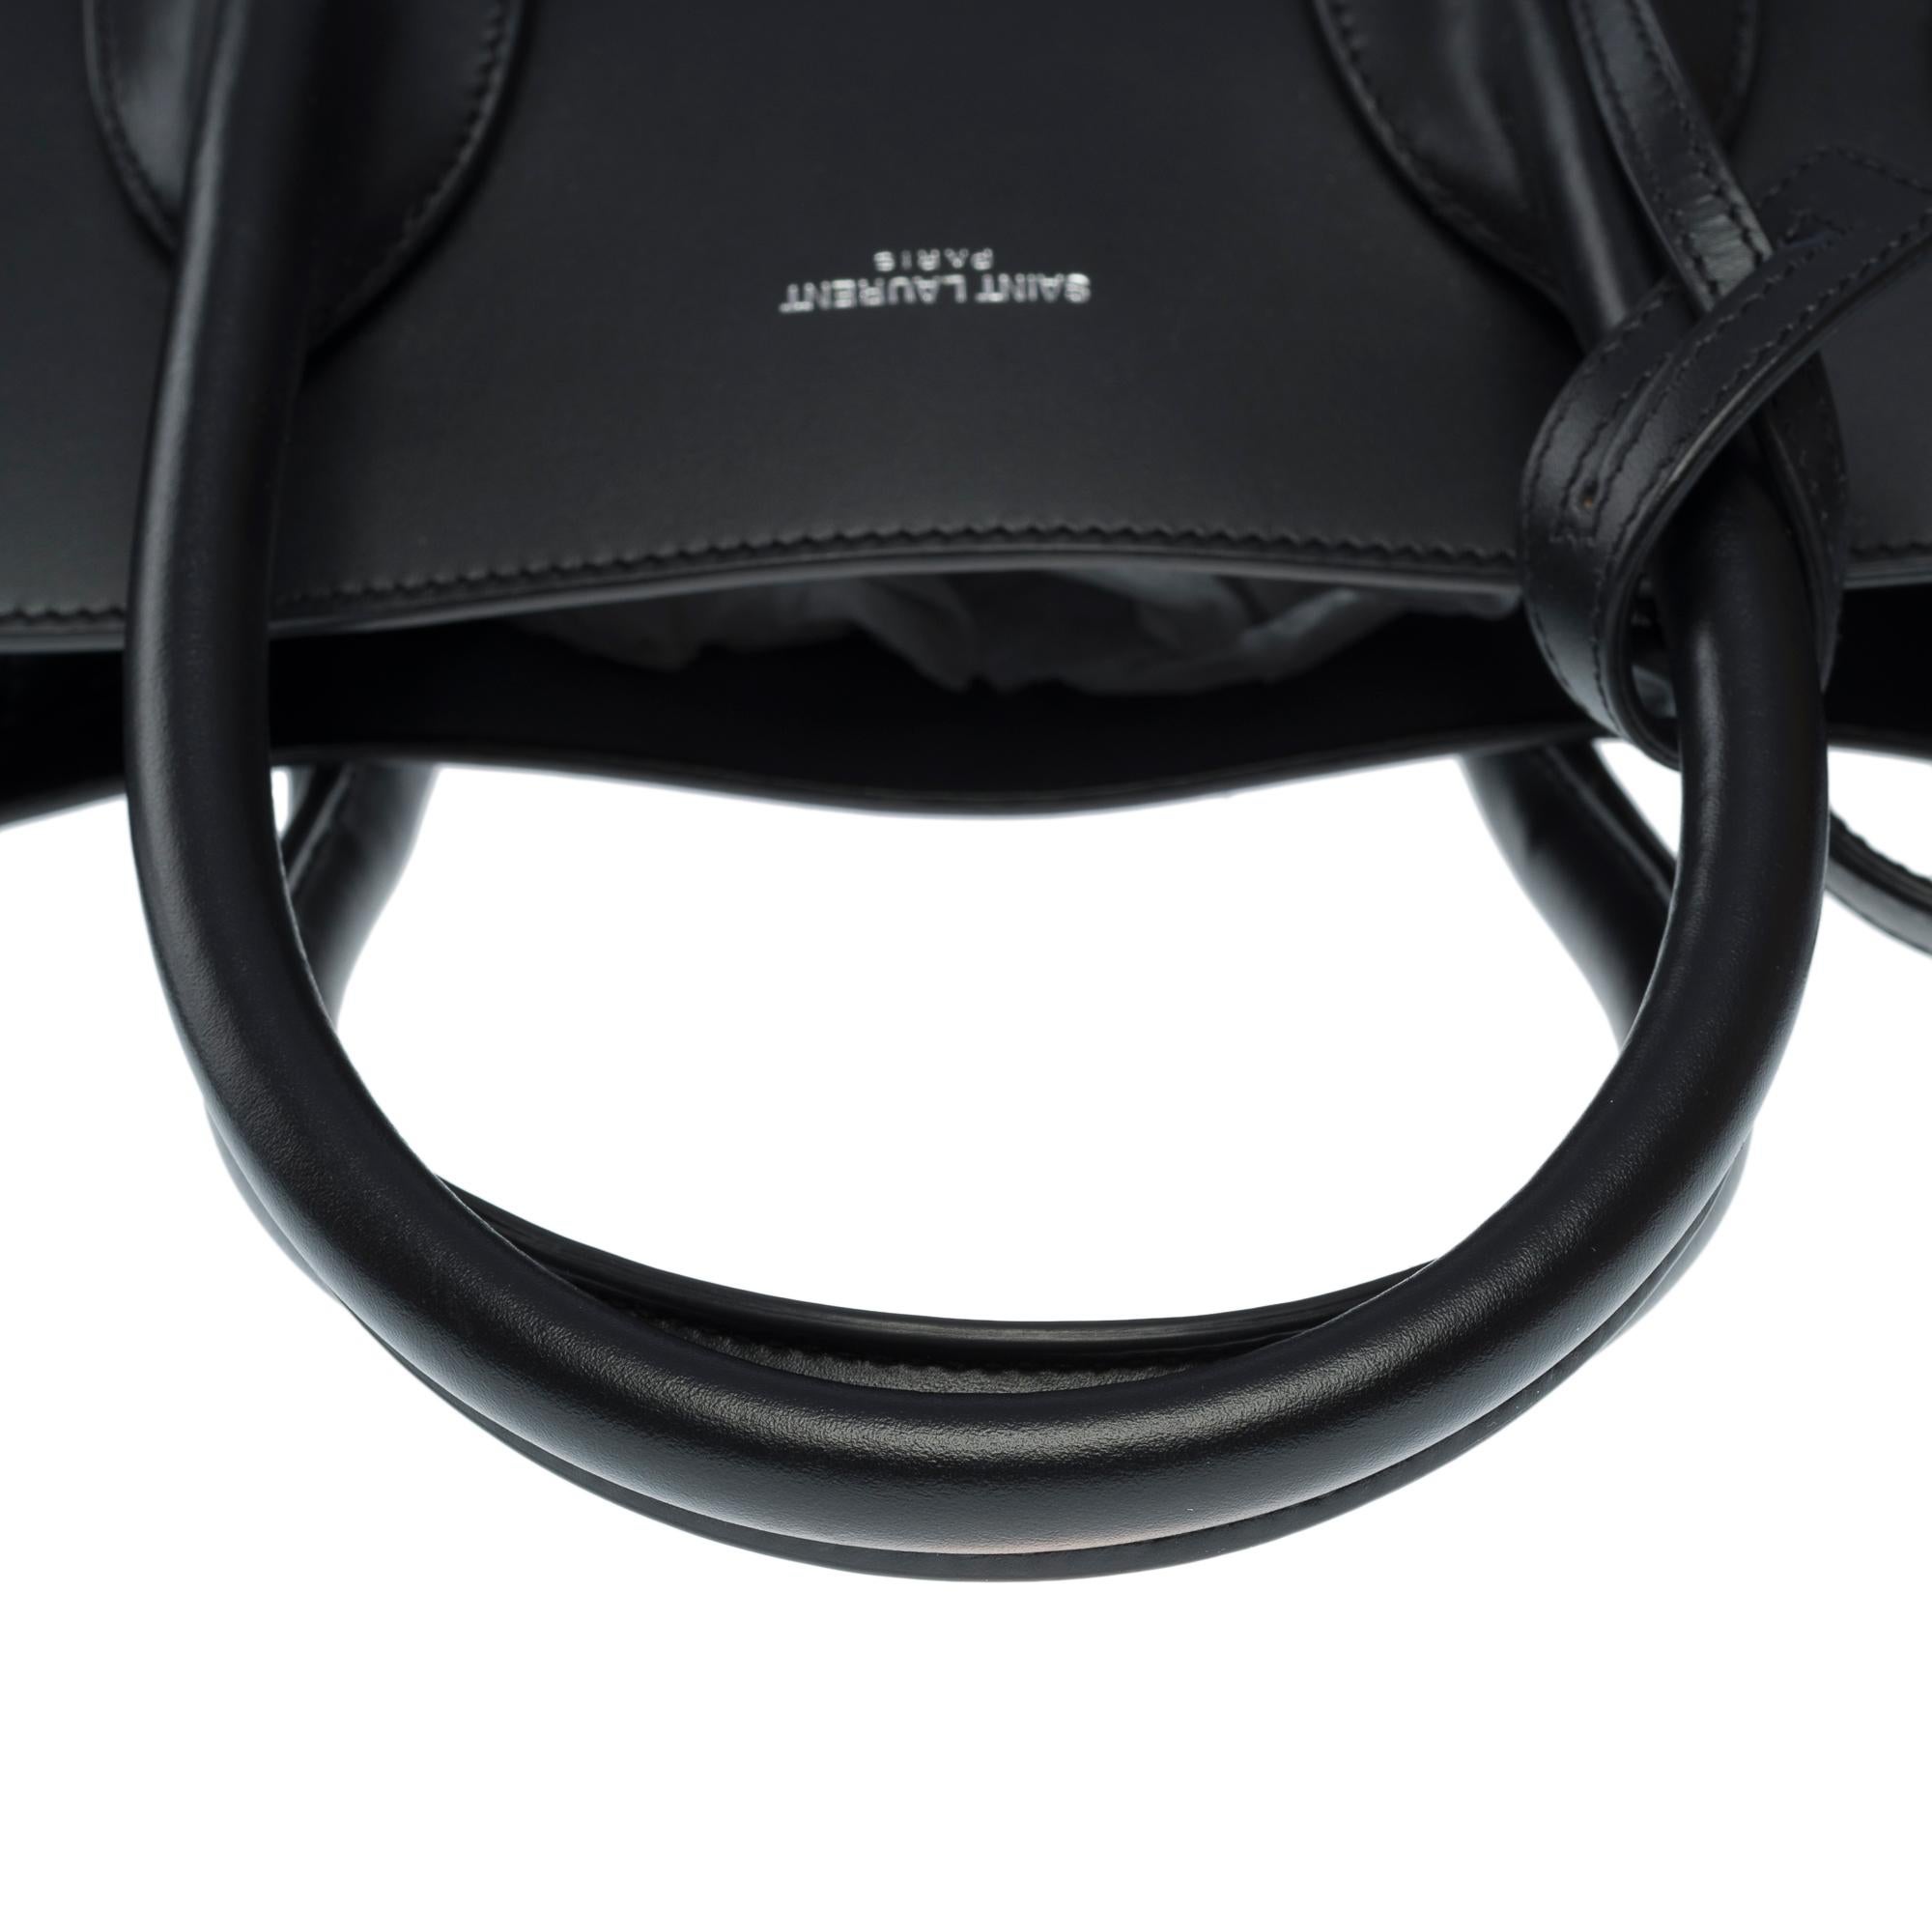 Saint Laurent Sac de Jour Small size handbag strap in black Box calf leather For Sale 7